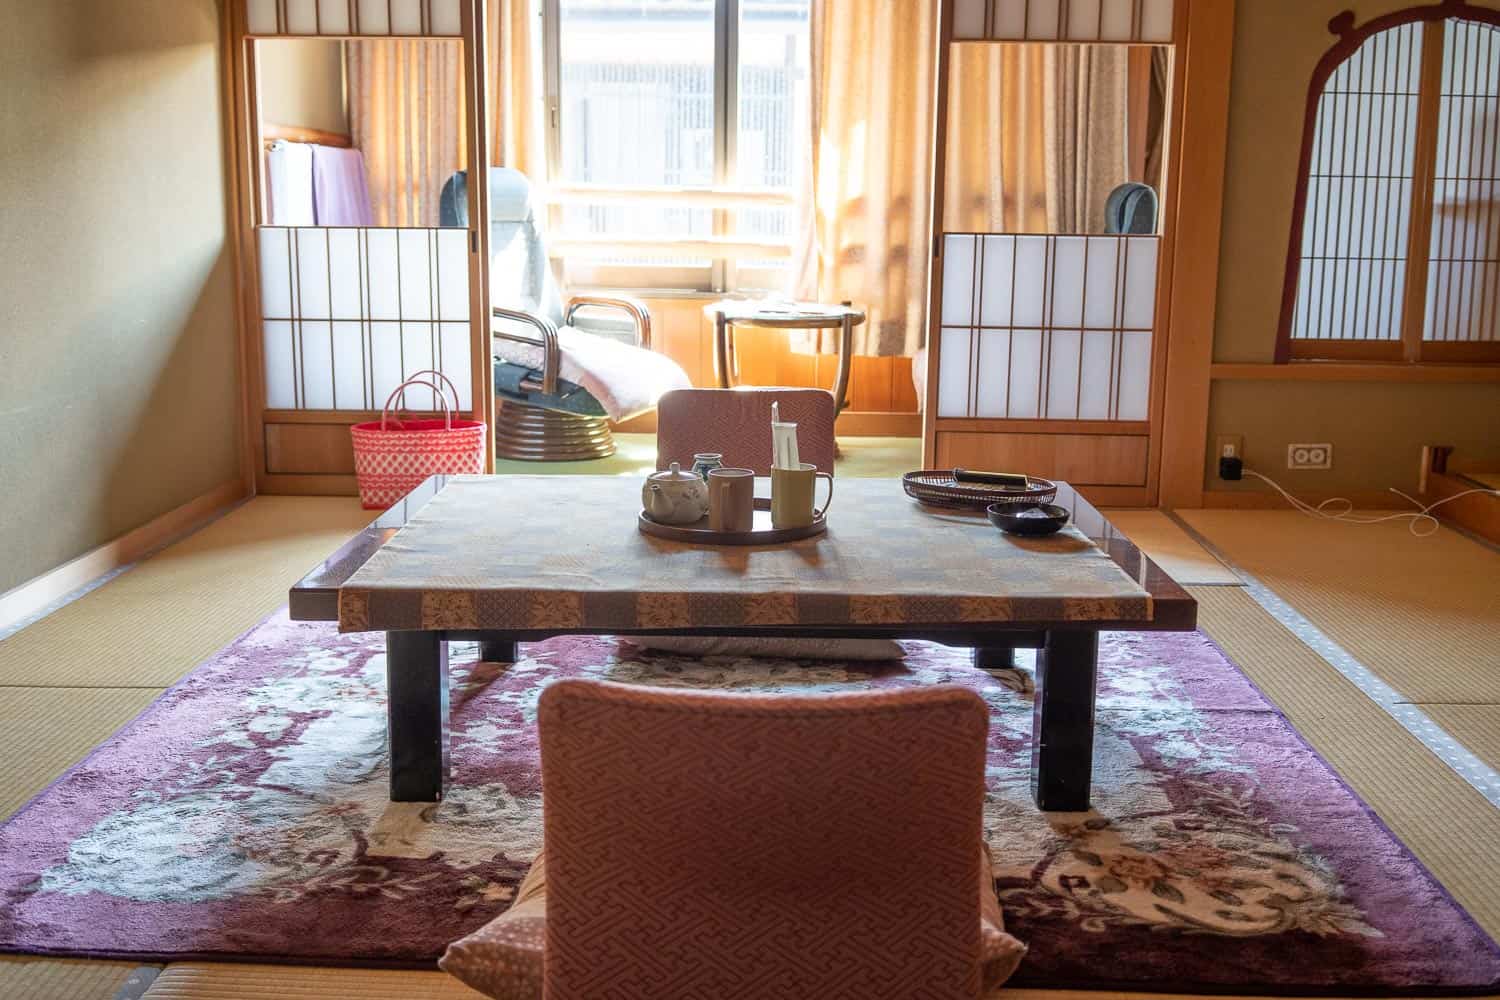 Our tatami room at Morizuya Ryokan in Kinosaki Onsen, Japan